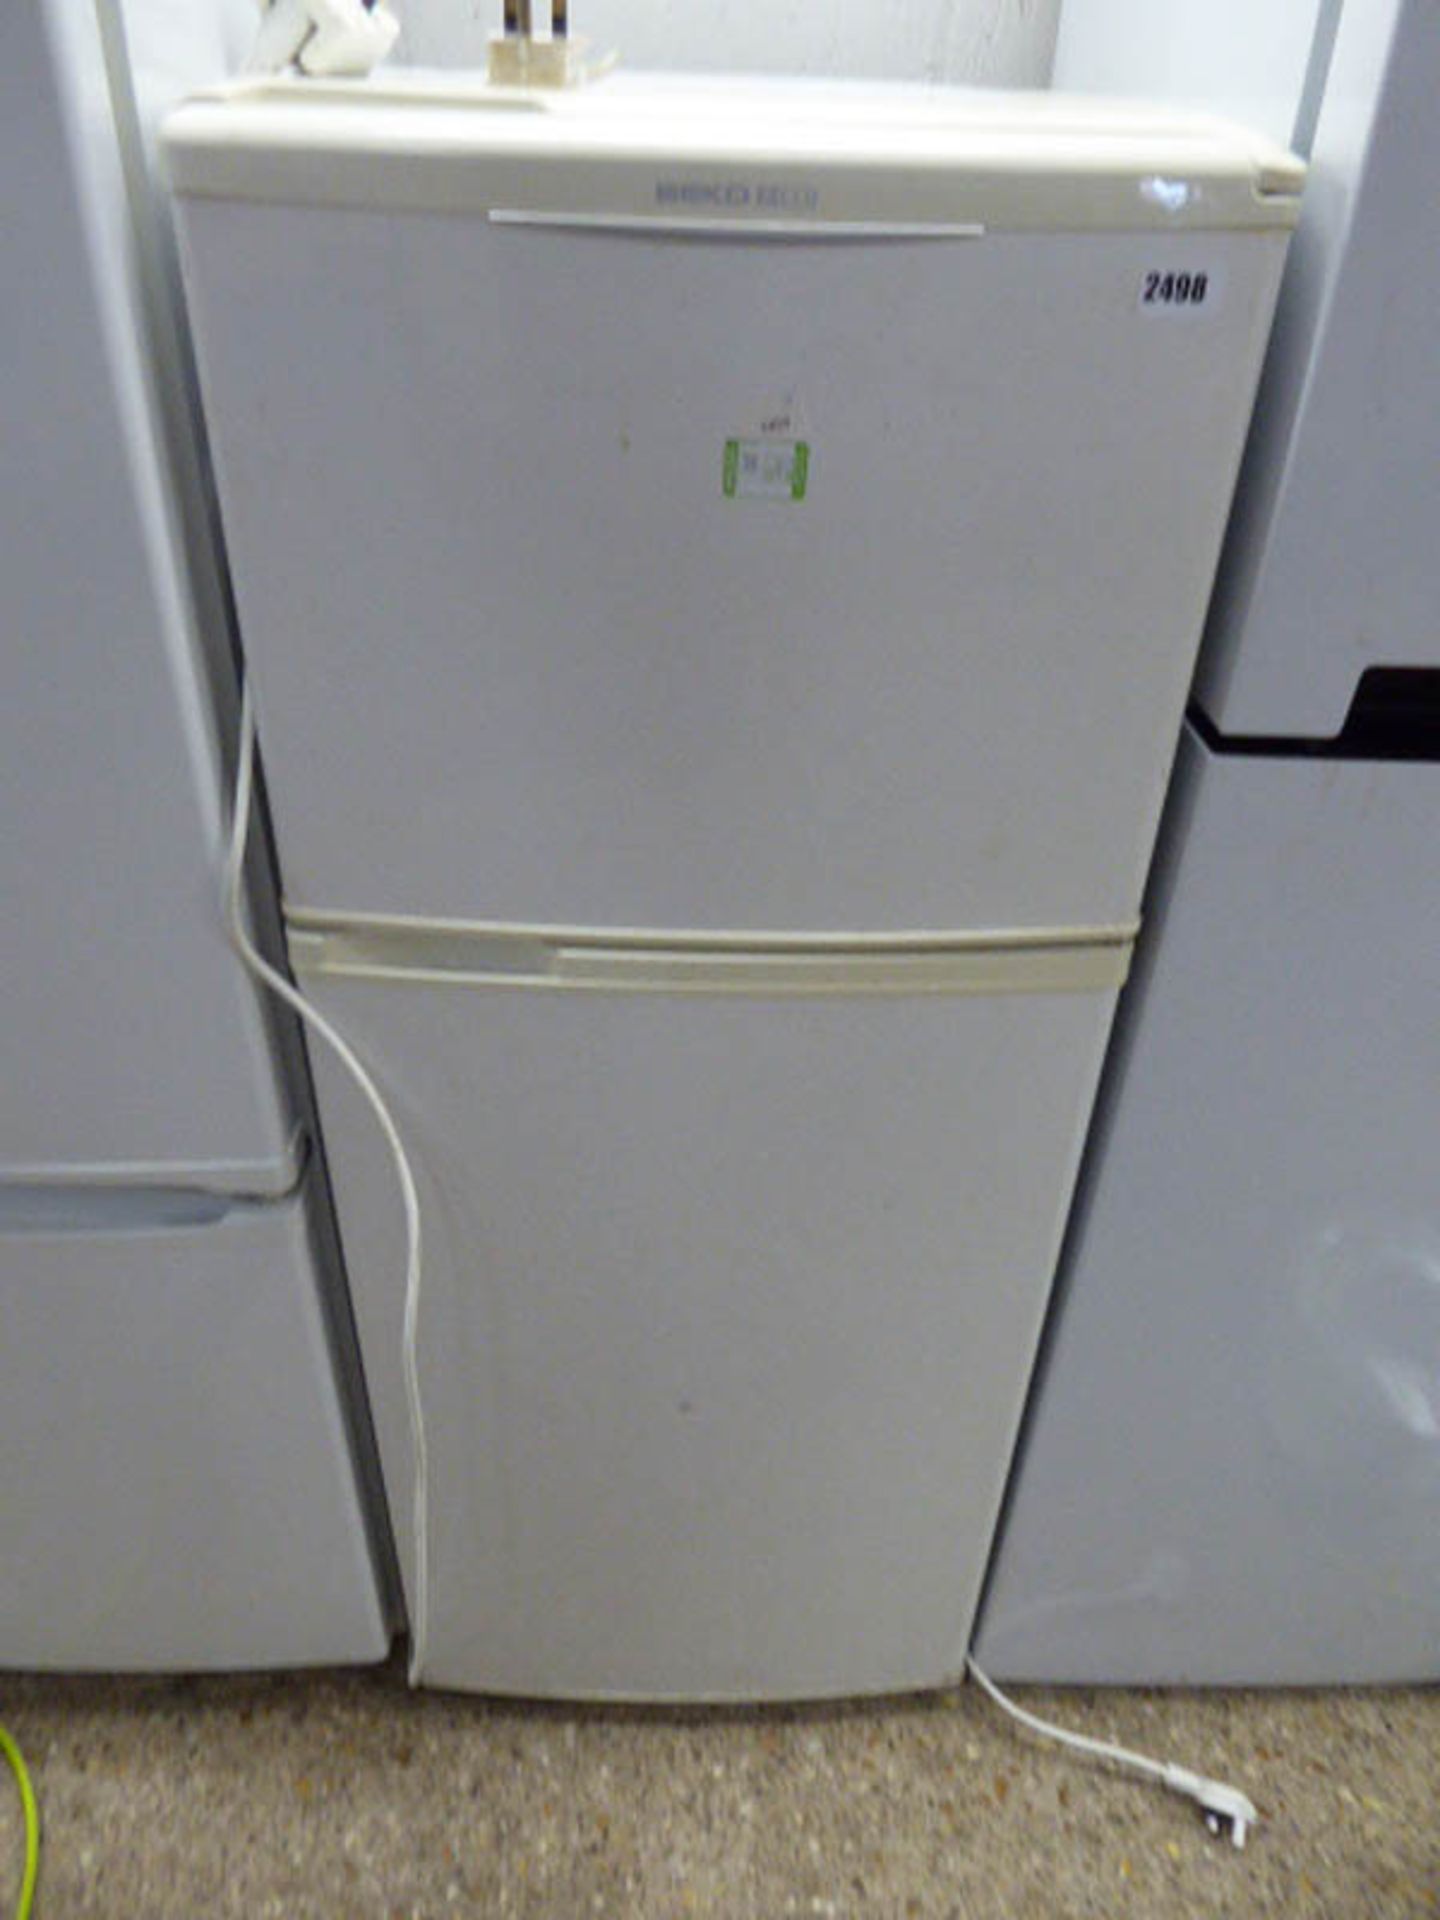 (2454) Beko fridge freezer